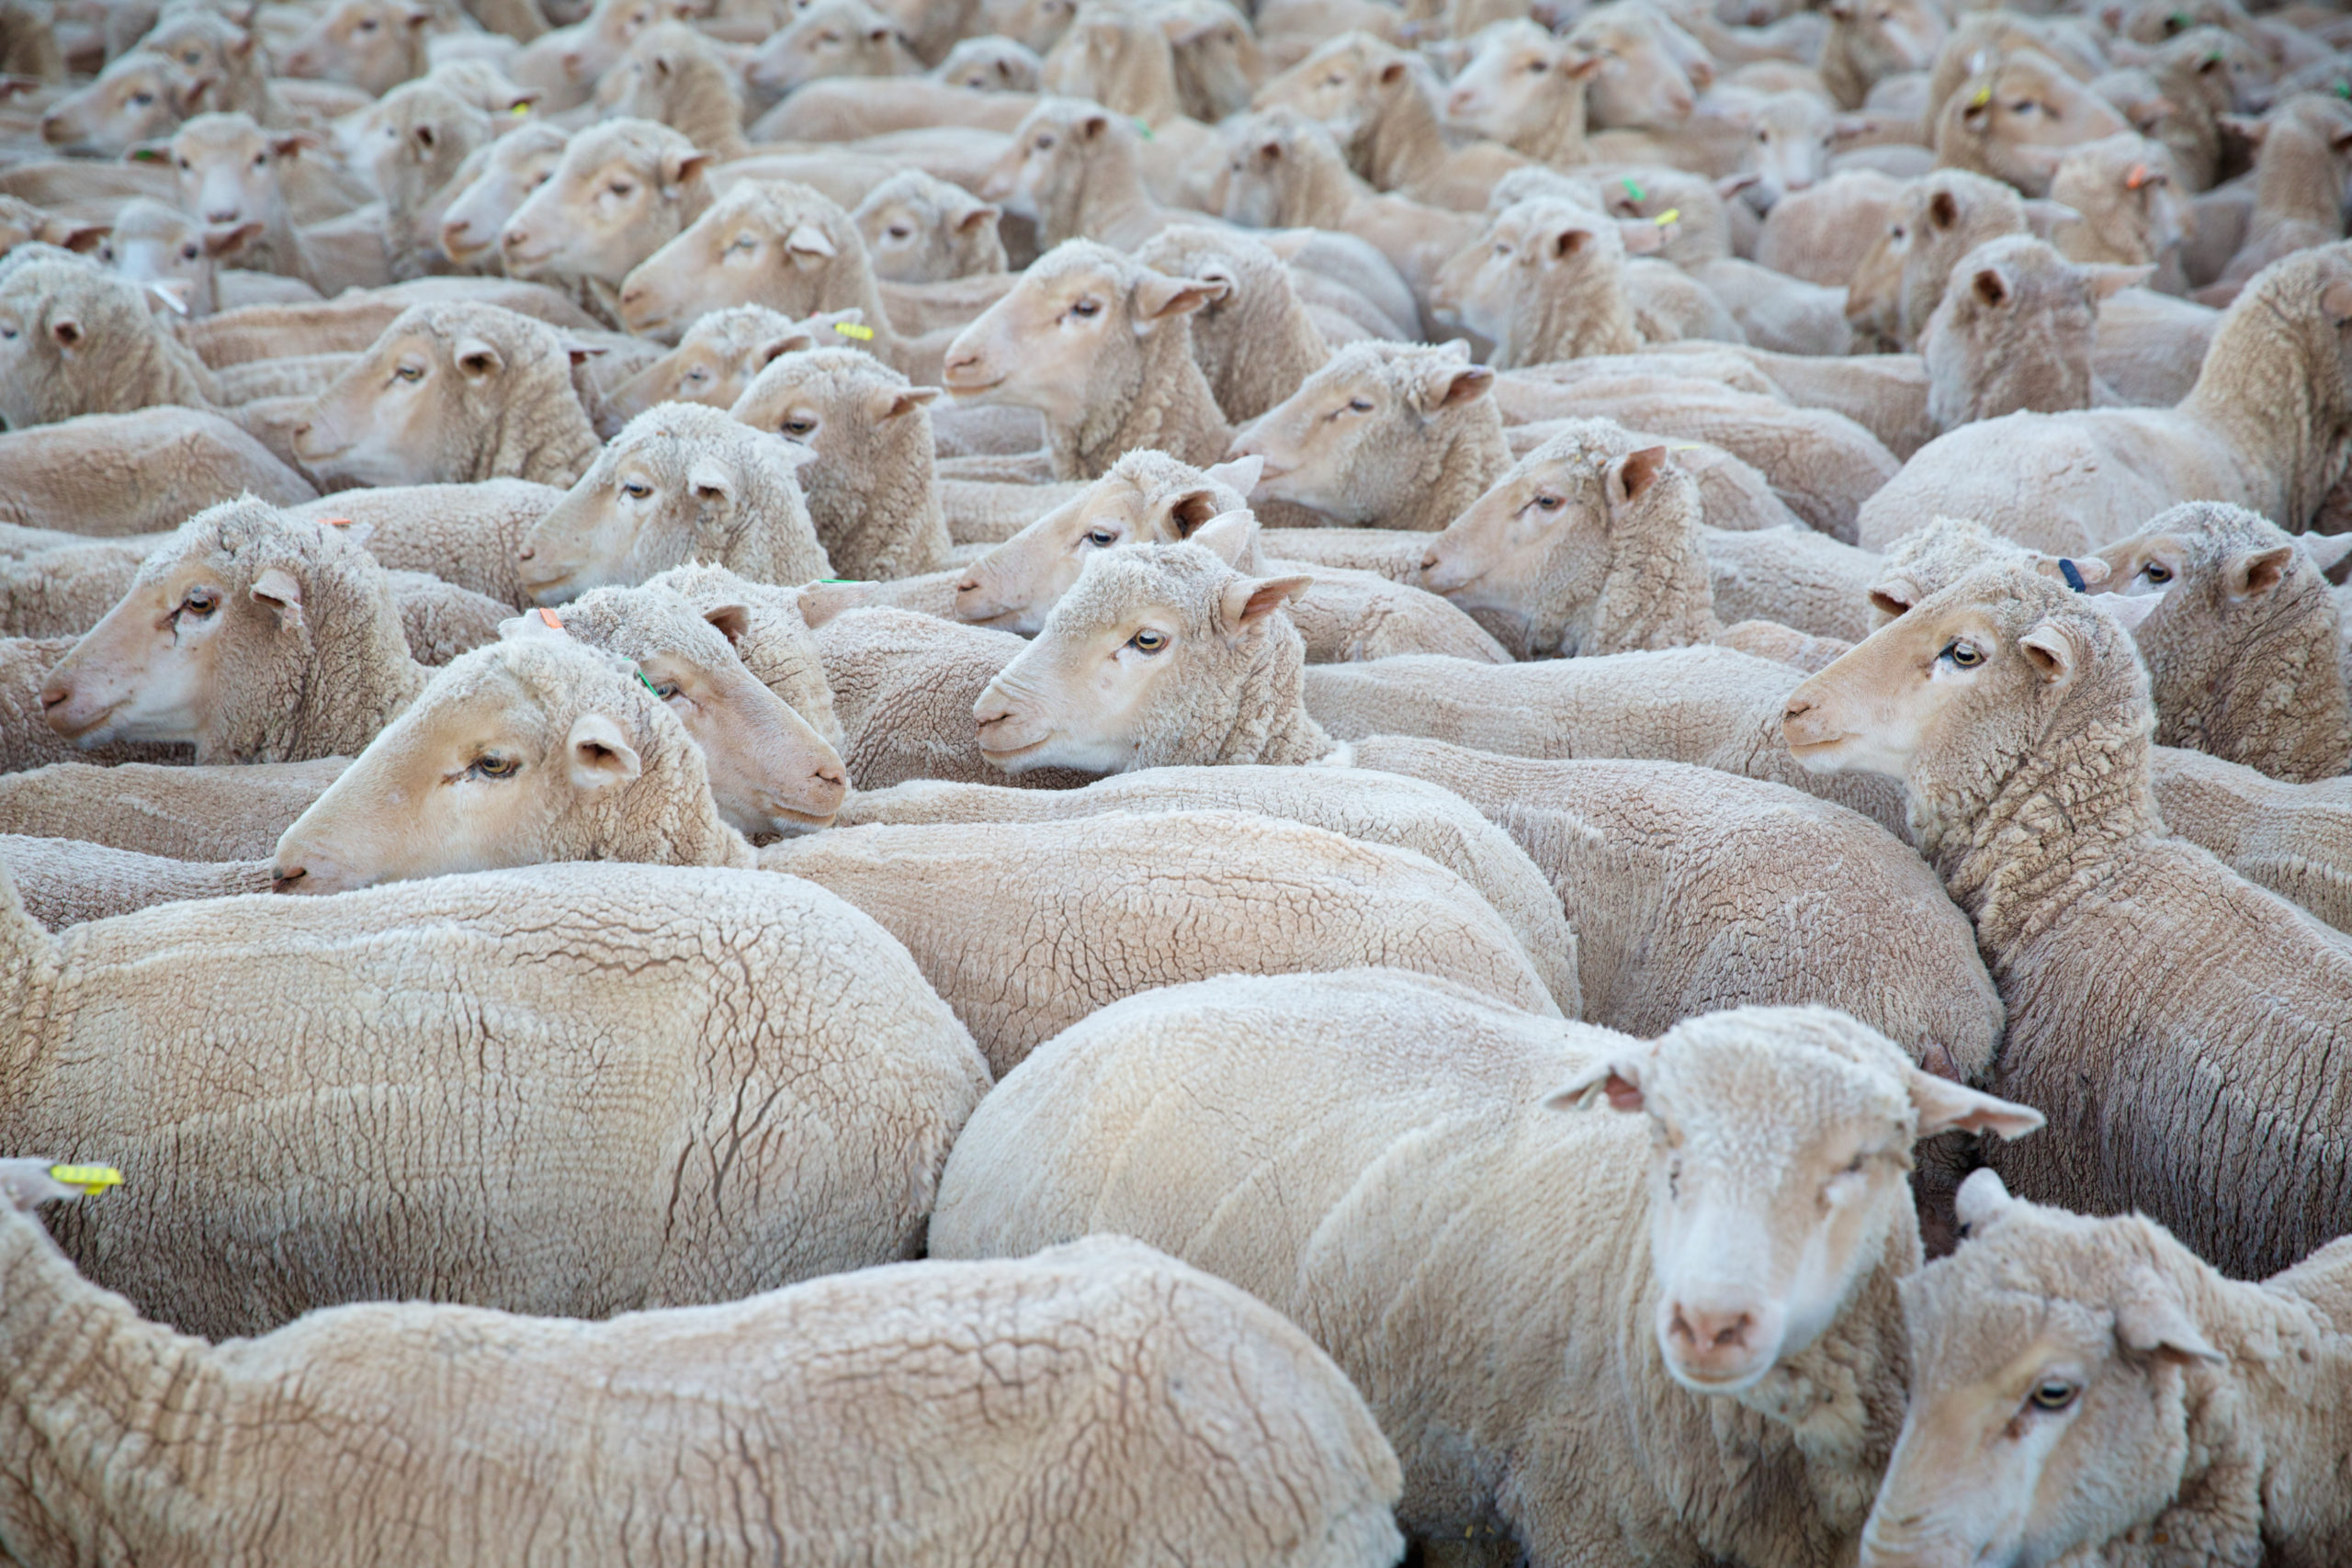 Apparel slowdown weighs on wool market